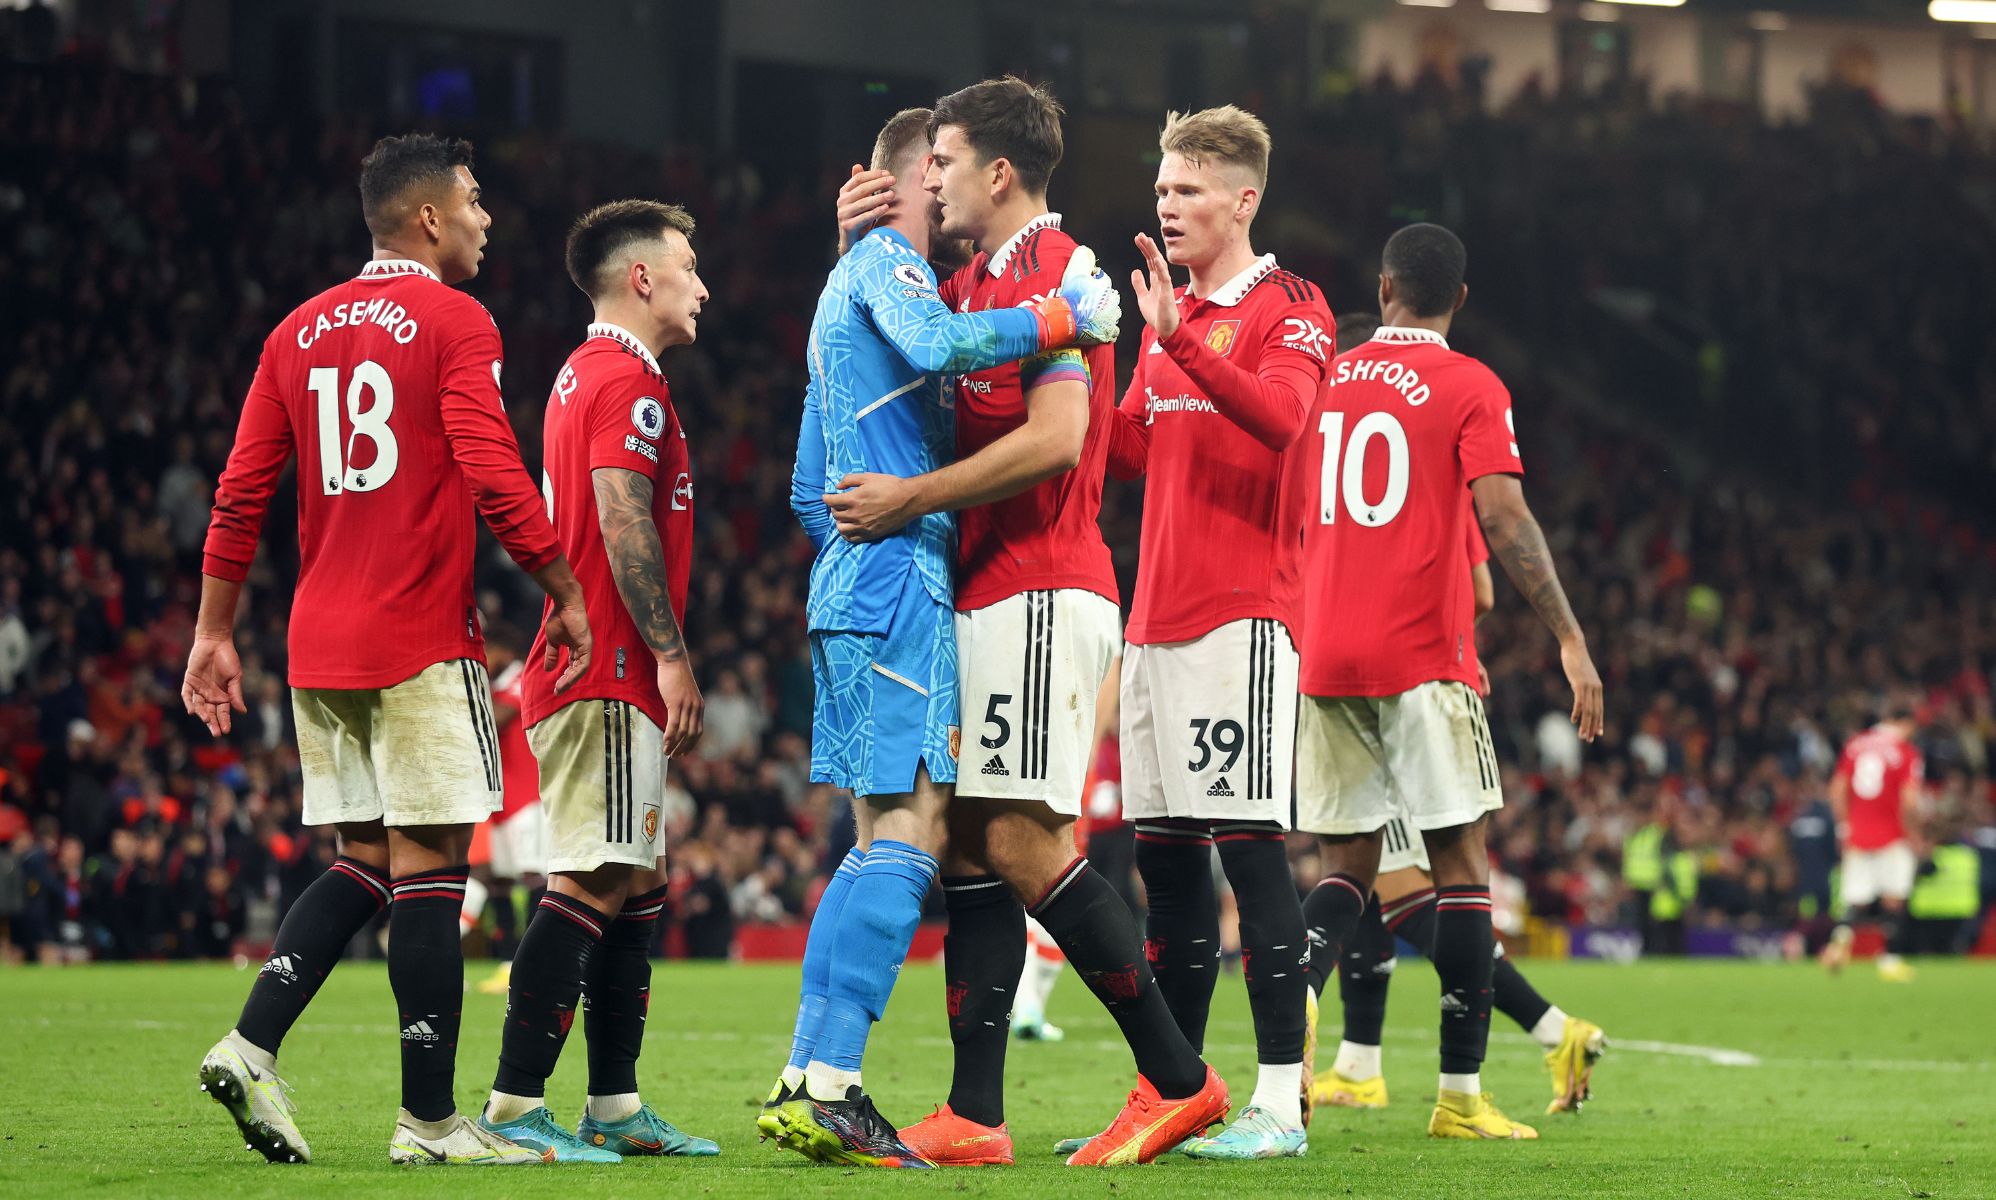 El Manchester United condena el cántico homófobo contra el entrenador del equipo contrario